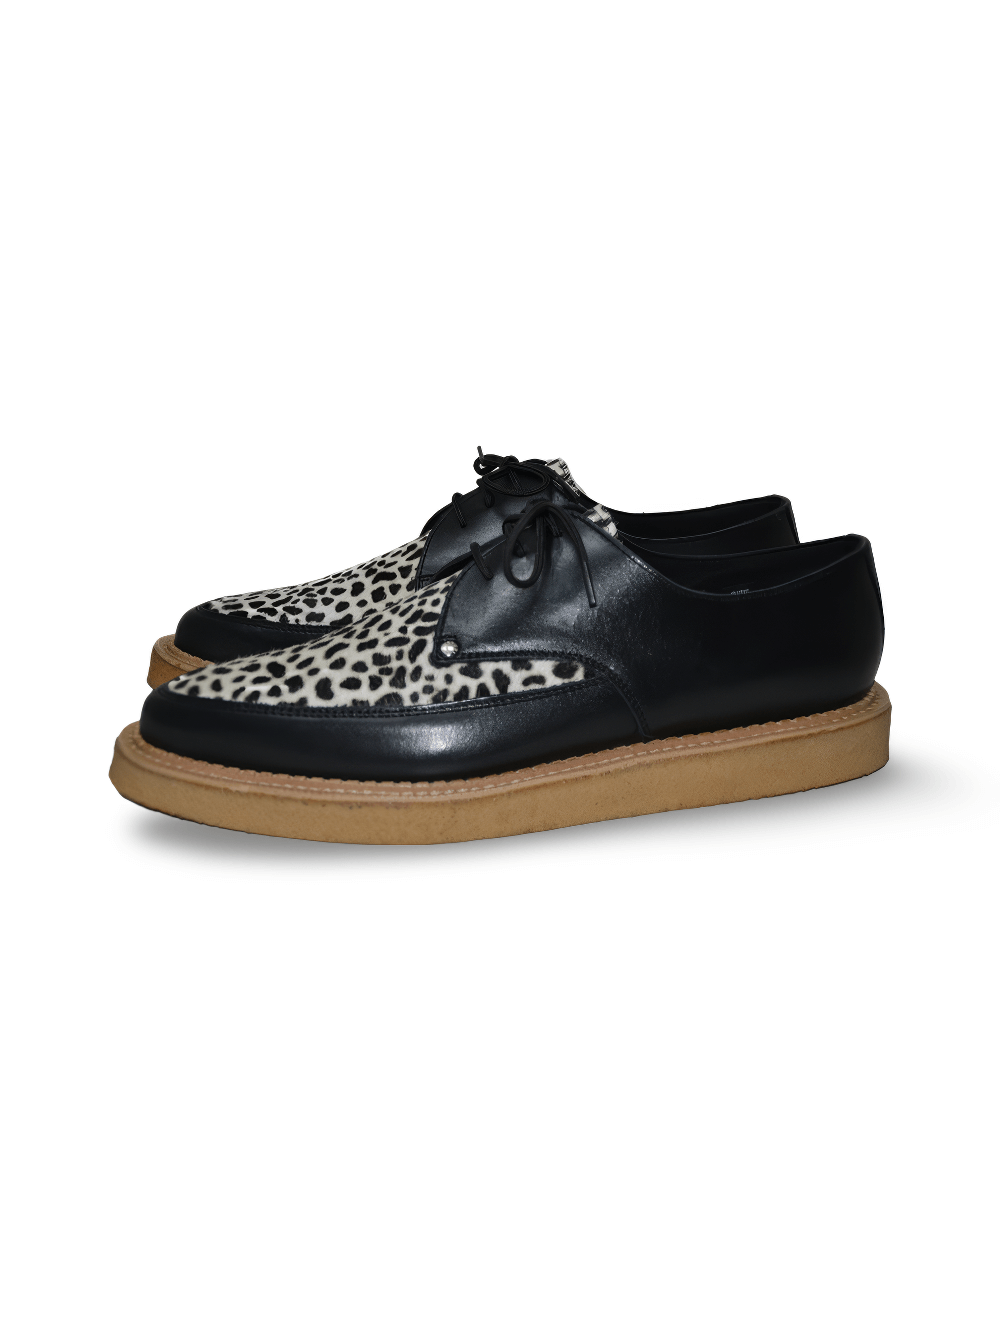 Chaussures Creepers pointues léopard noires avec semelle en crêpe